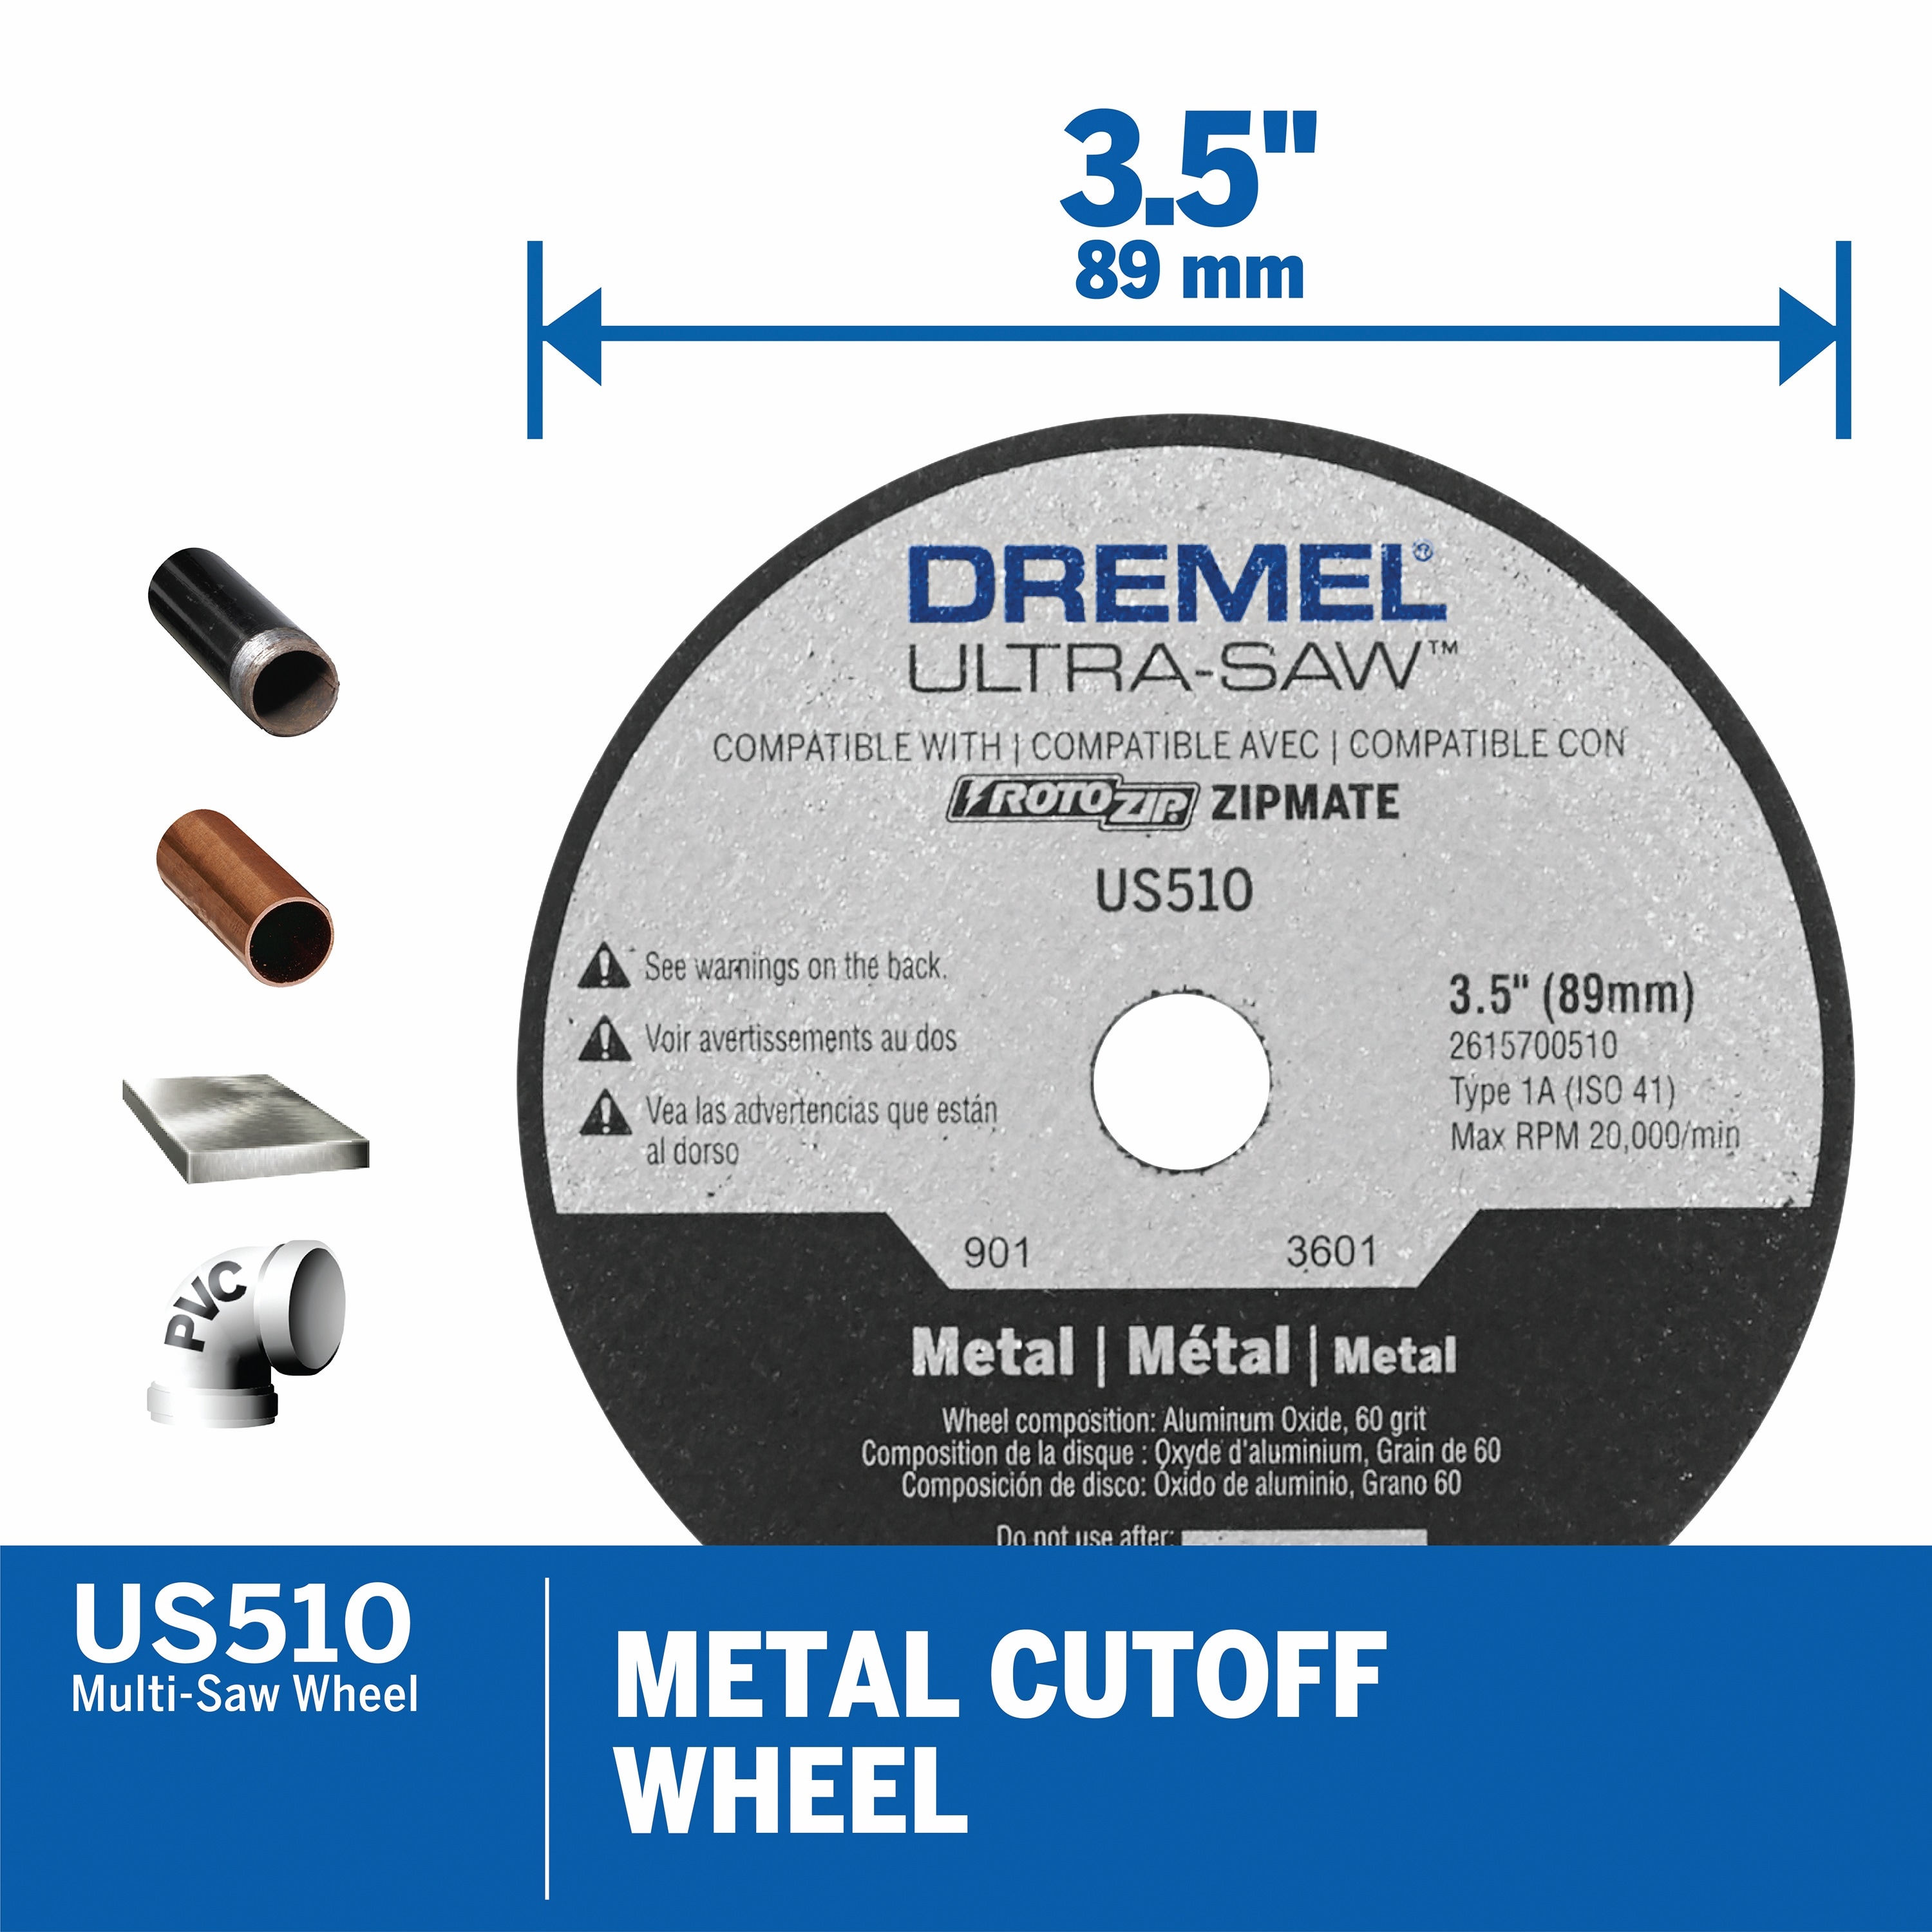 Dremel 20V Cordless Multi-Saw Kit US20V-02 - Acme Tools